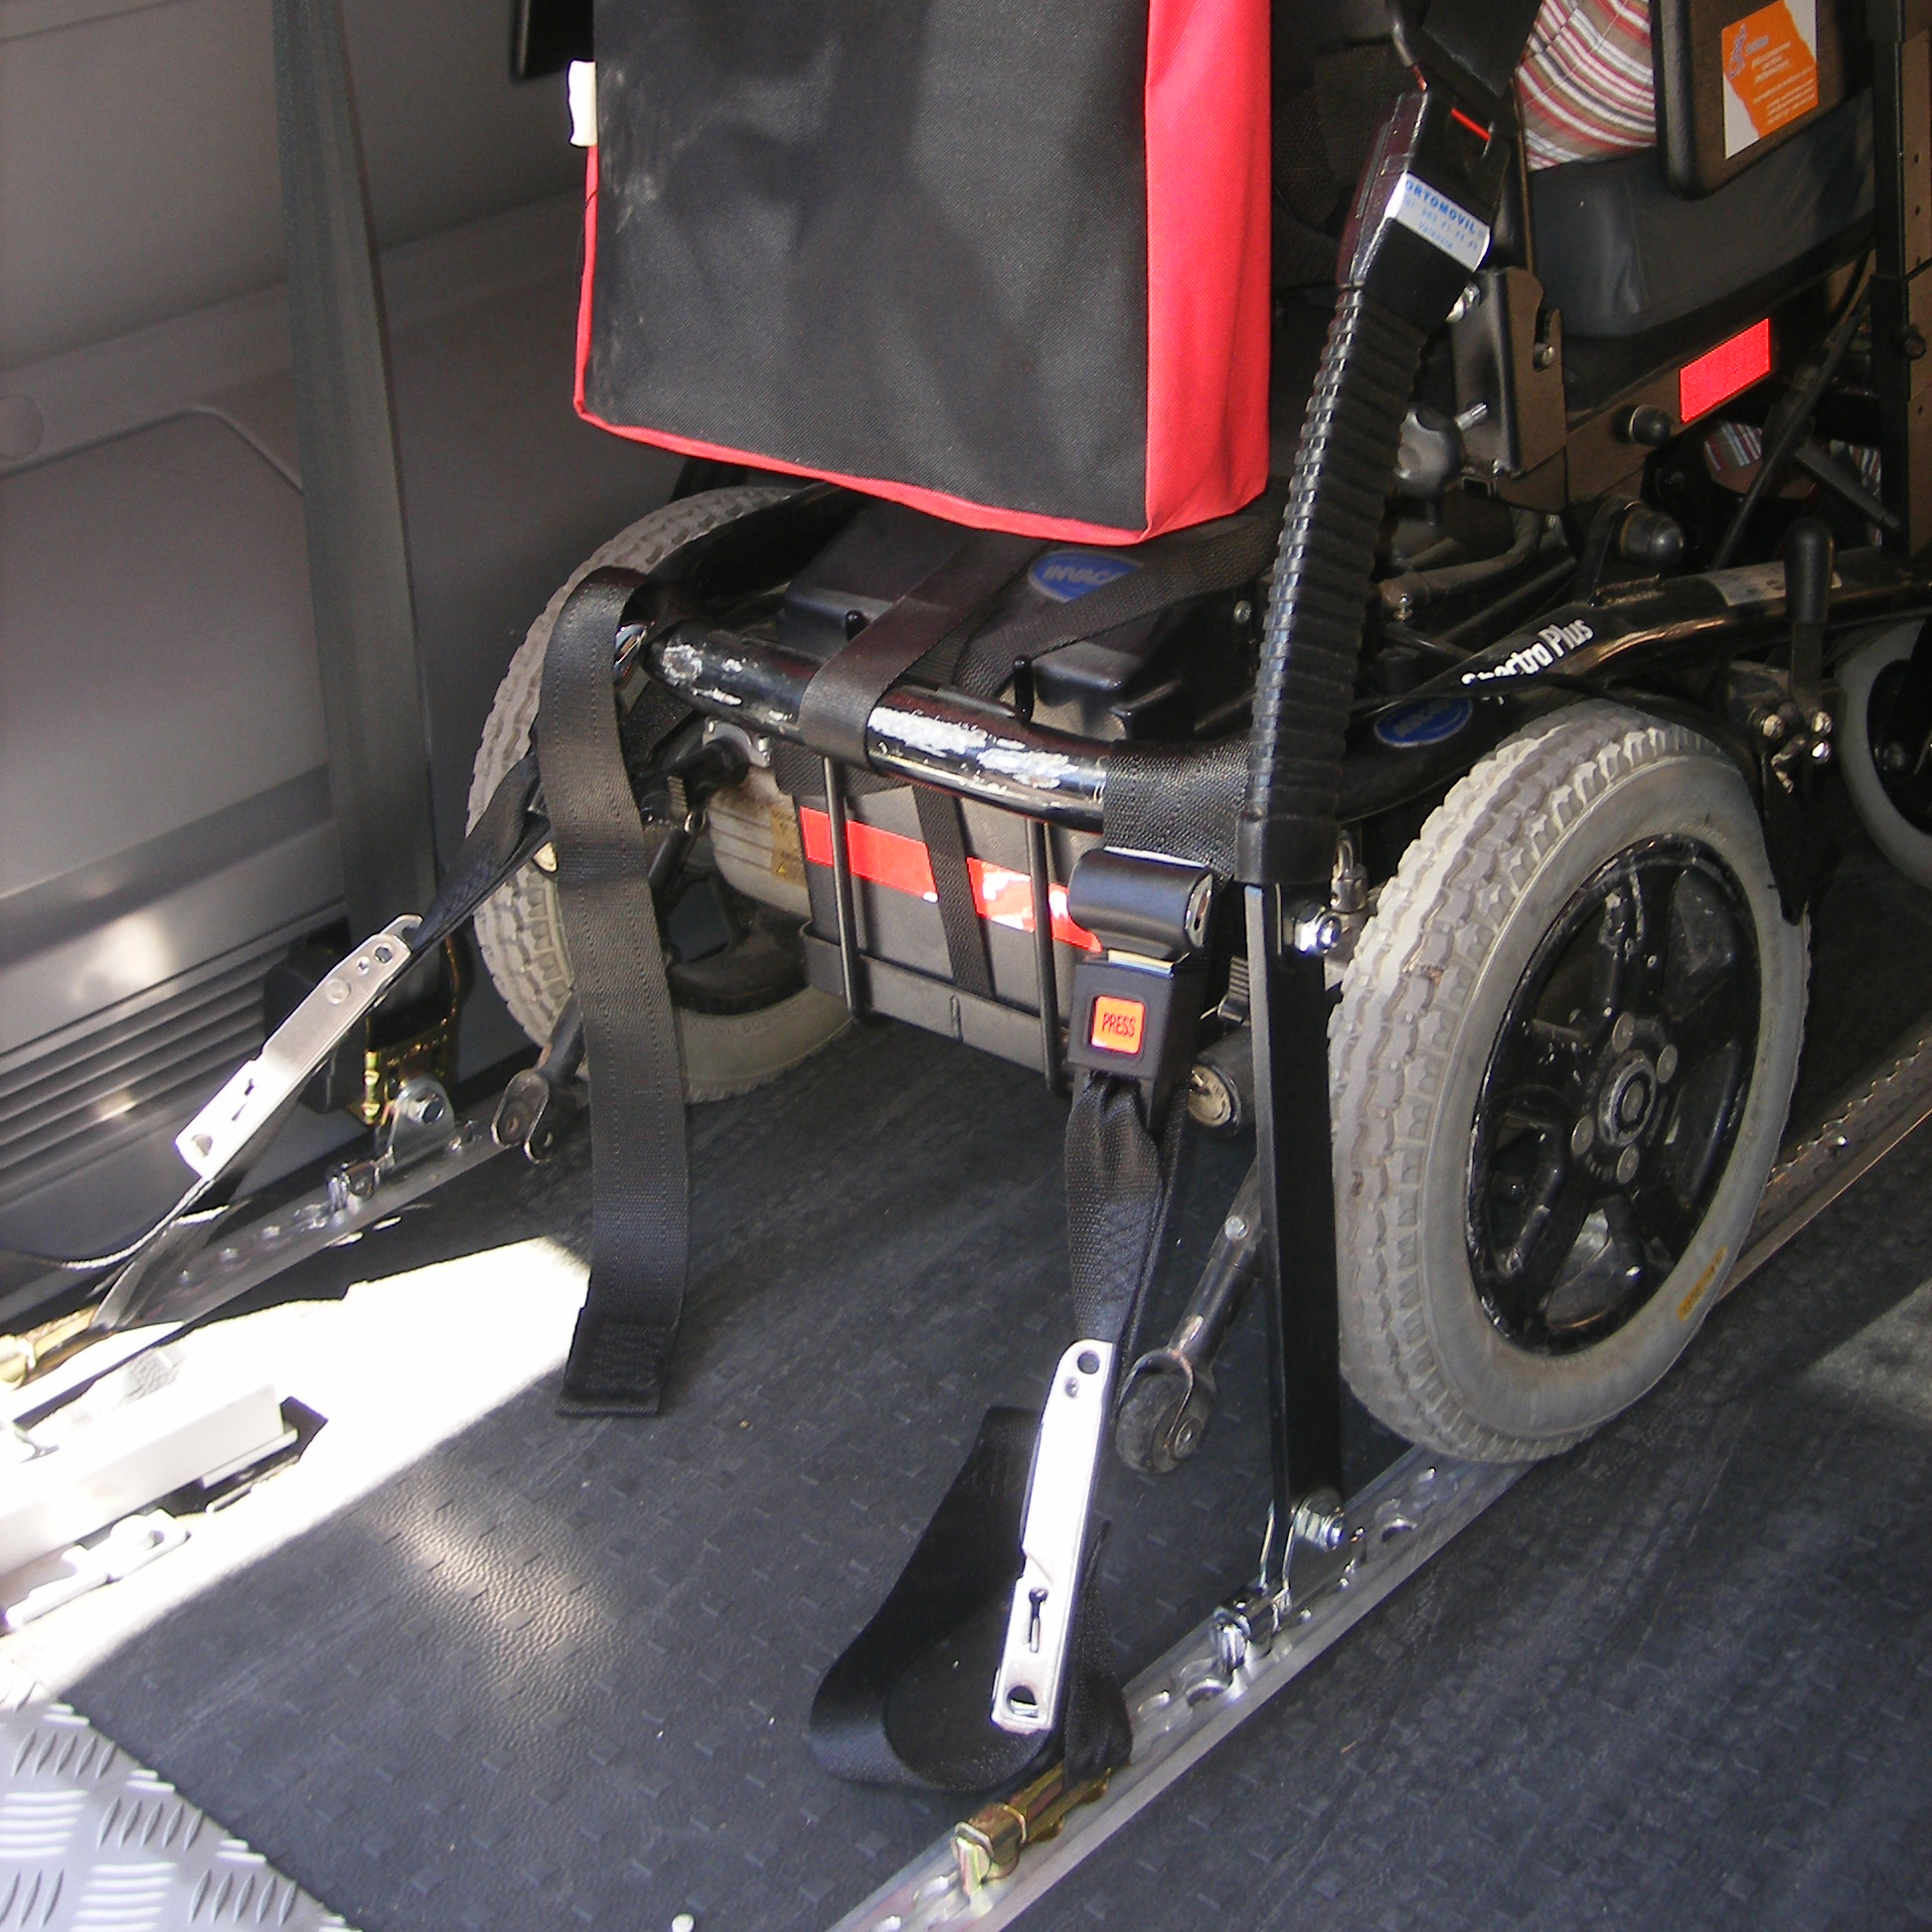 Silla de ruedas sujeta a los anclajes de seguridad de una furgoneta adaptada